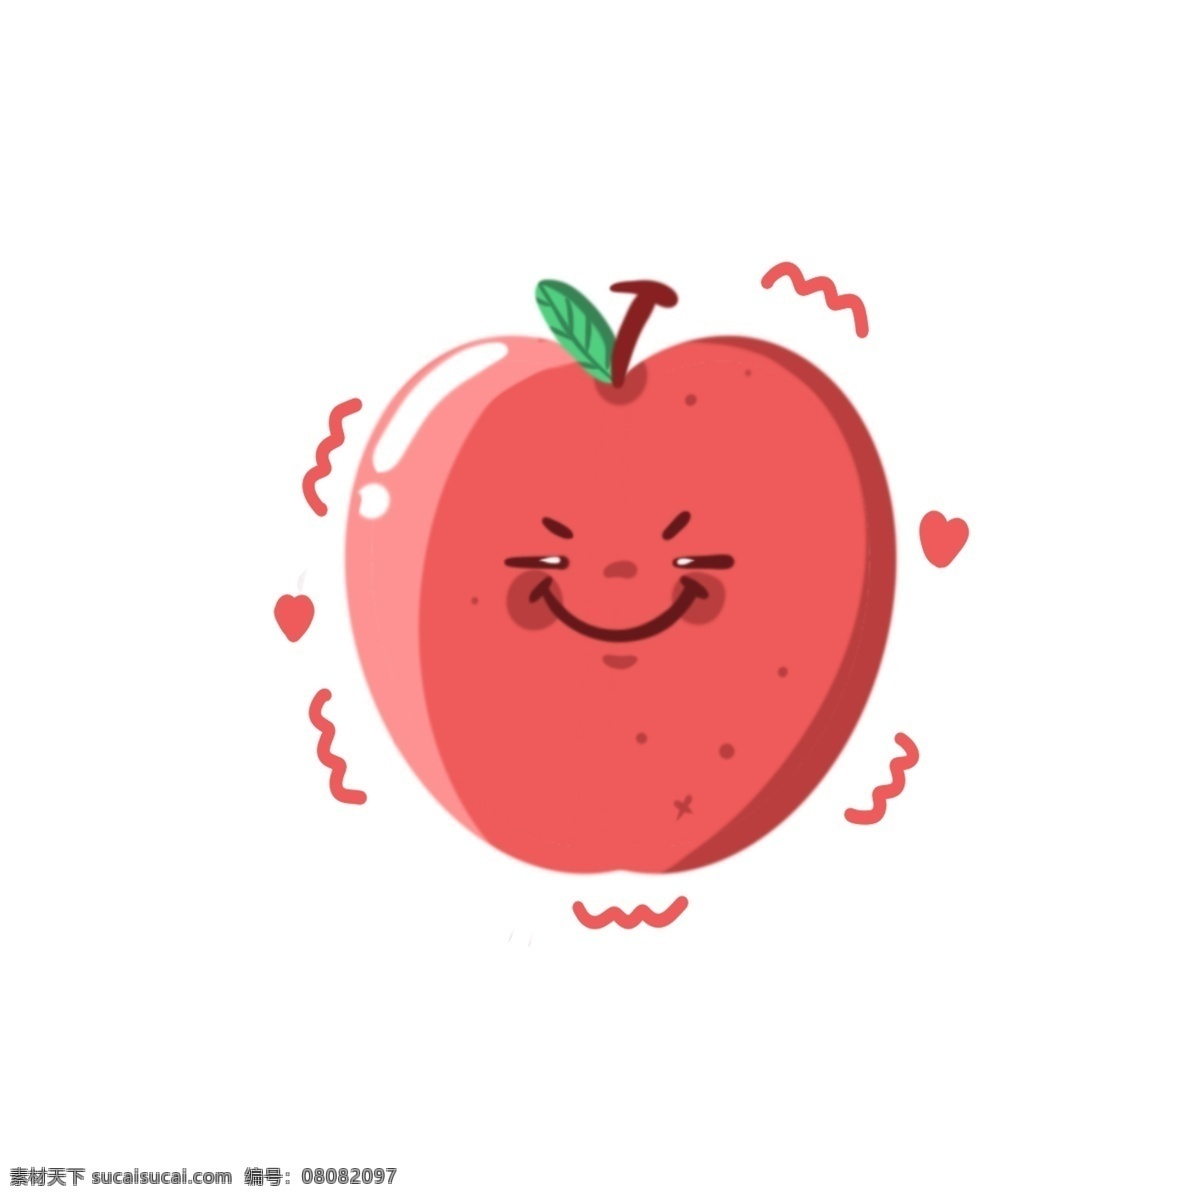 笑脸 卡通 苹果 形象 简约 水果 可爱